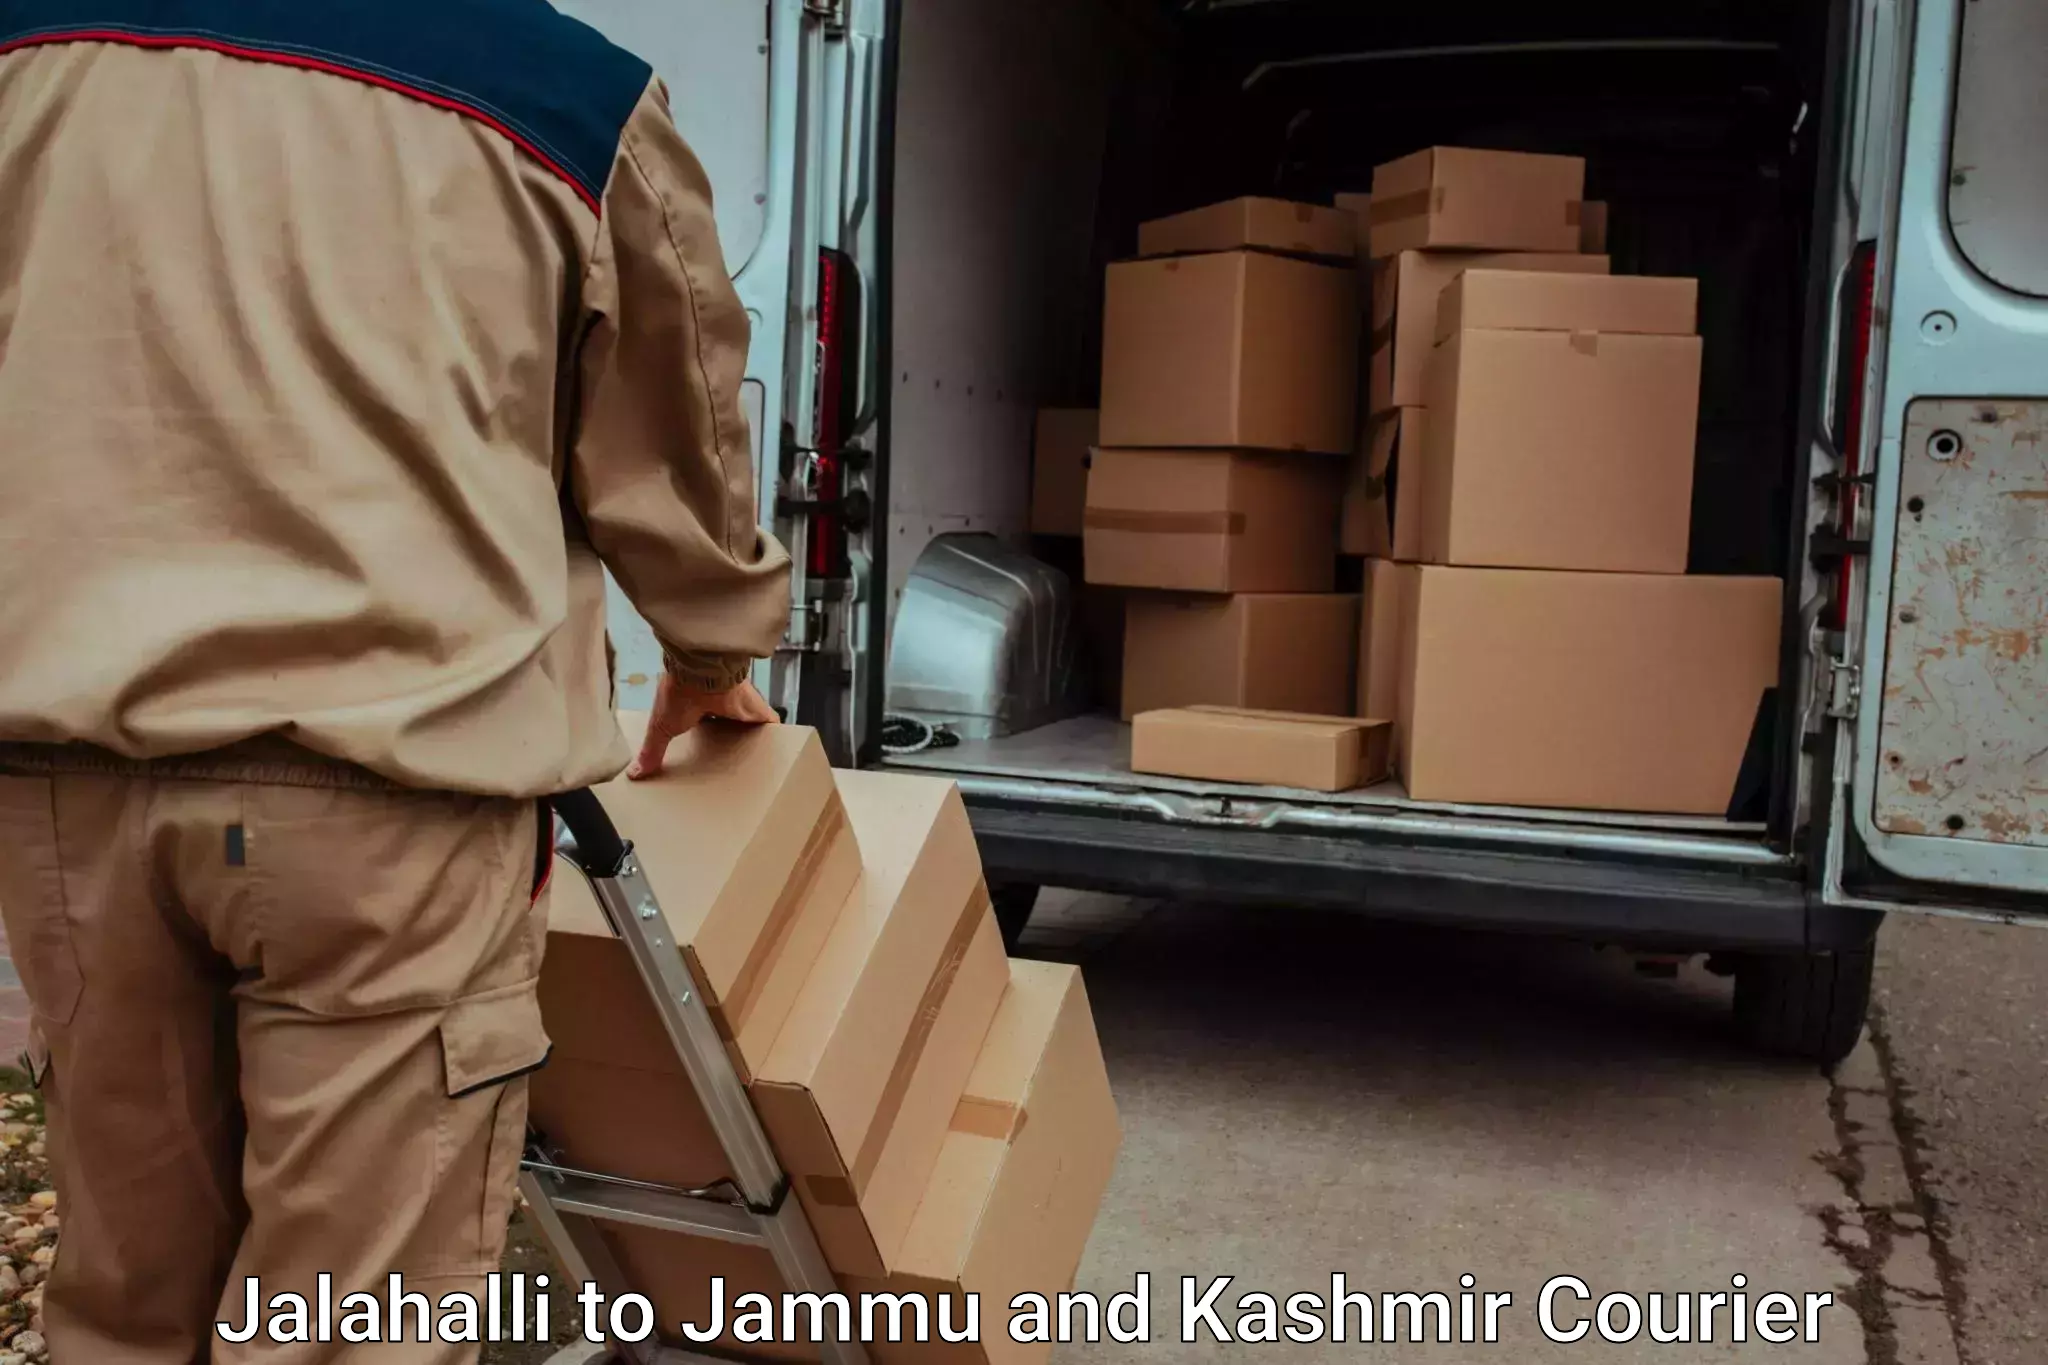 Luggage delivery network Jalahalli to Ramban